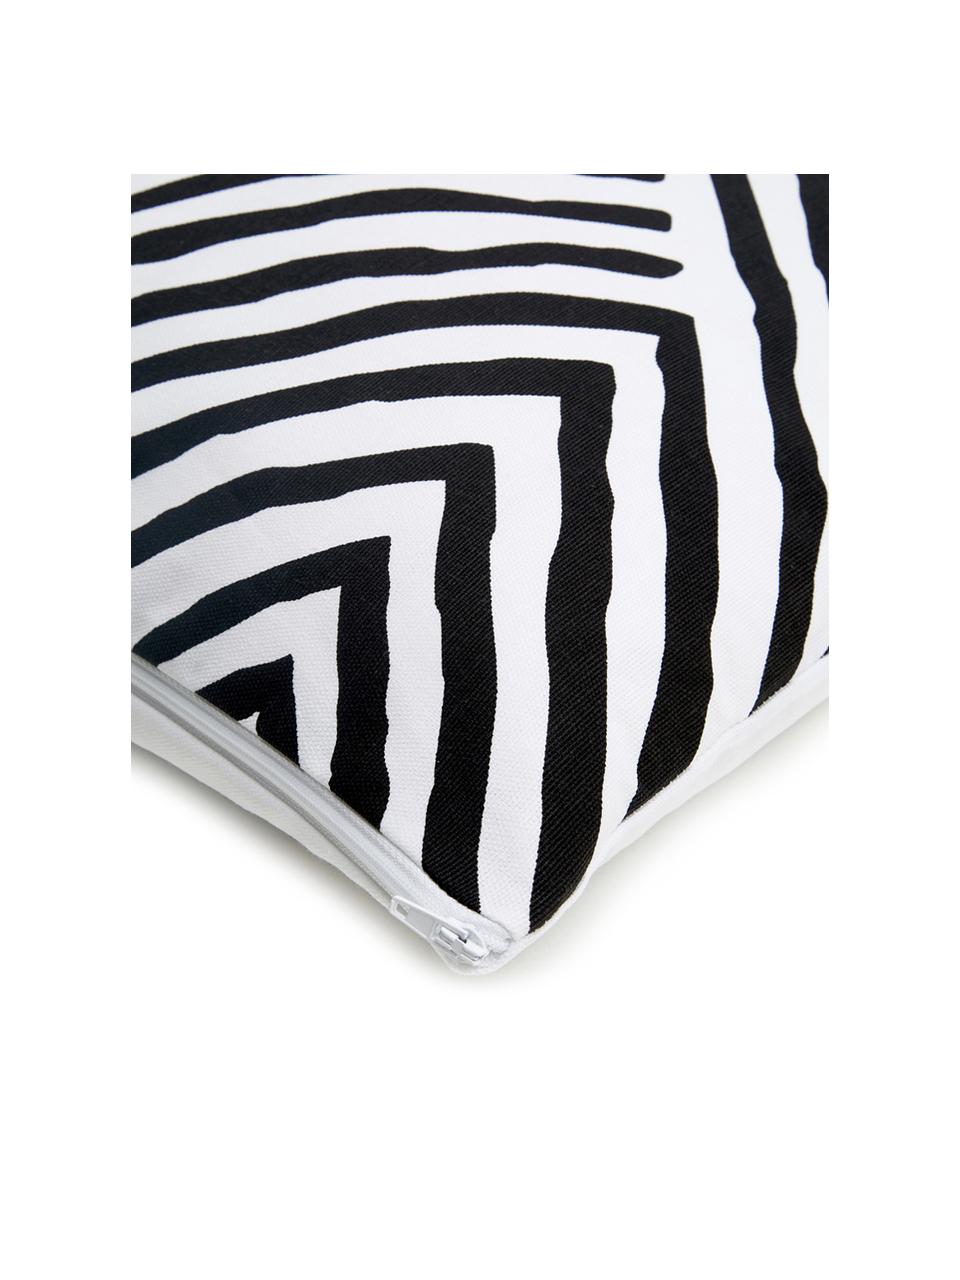 Kussenhoes met patroon Mia in zwart/wit, 100% katoen, Zwart, wit, 40 x 40 cm